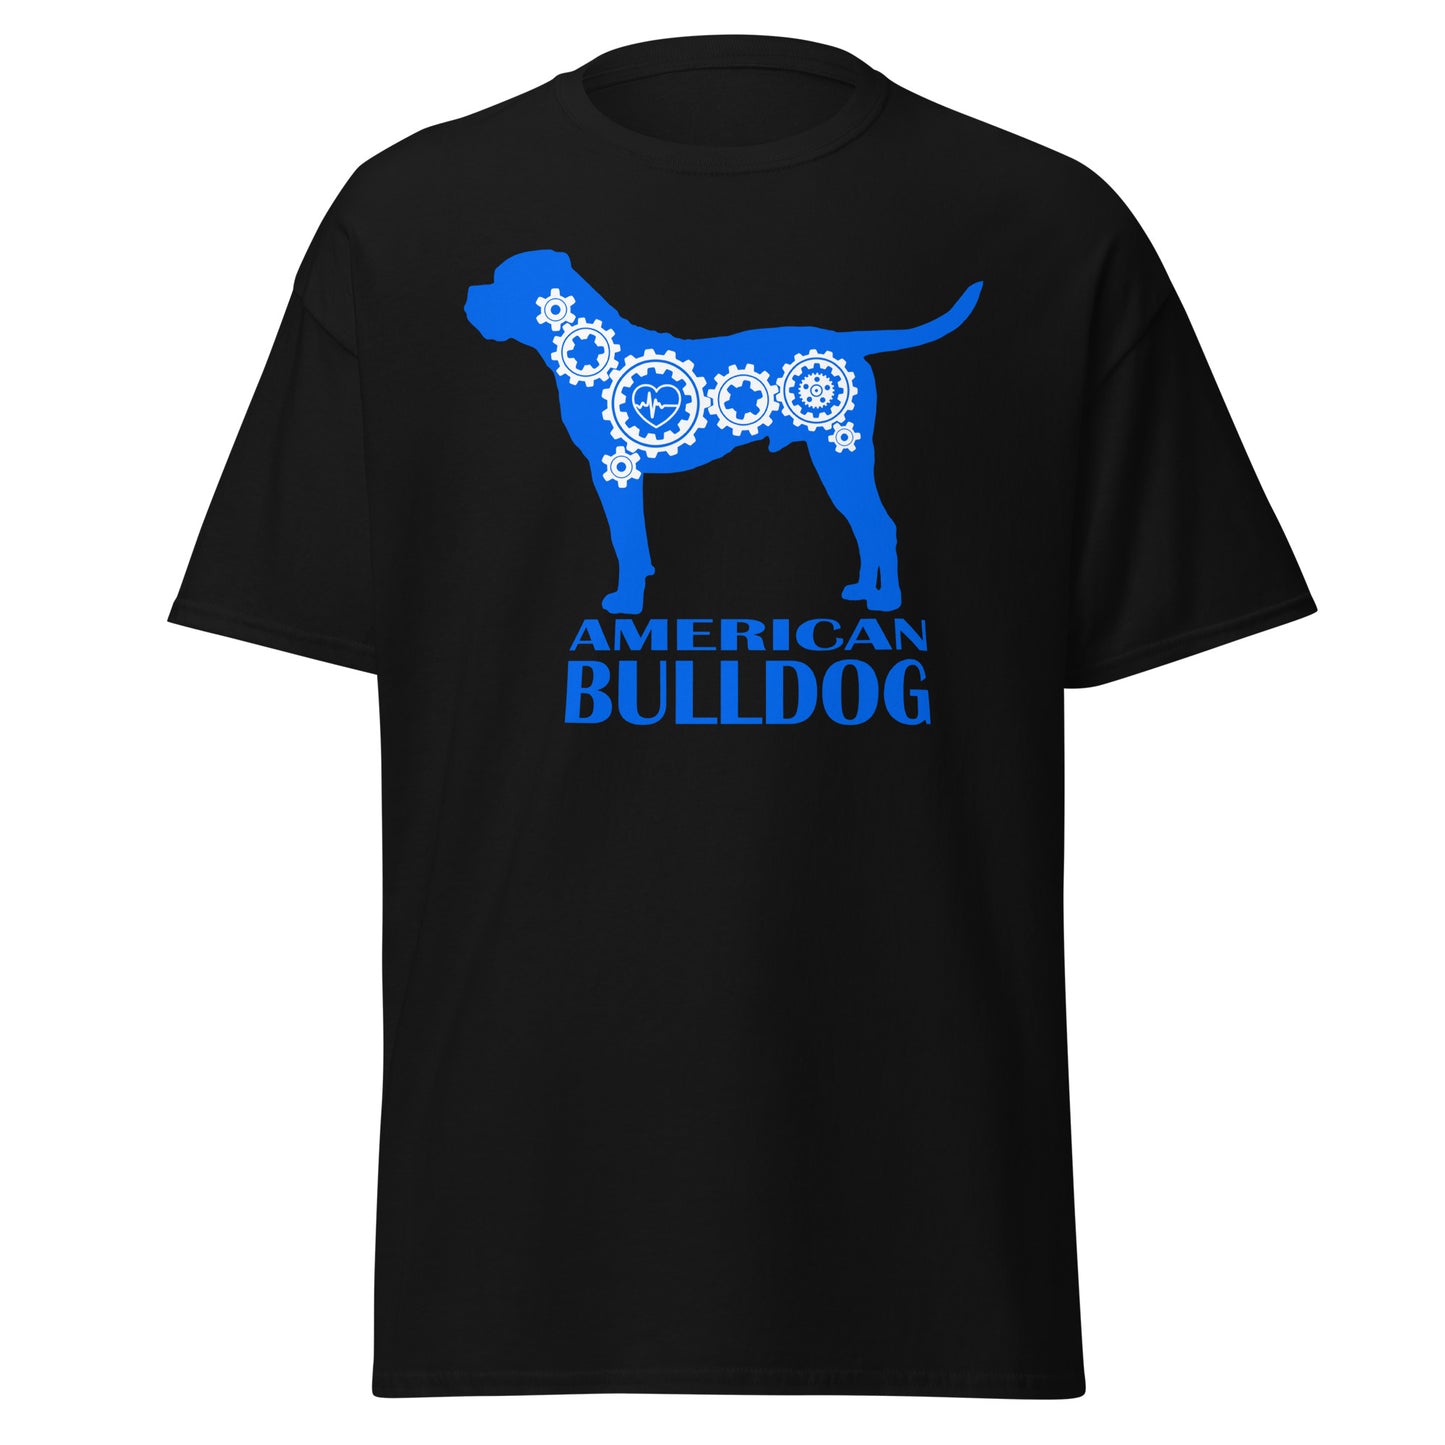 American Bulldog Bionic men’s black t-shirt by Dog Artistry.